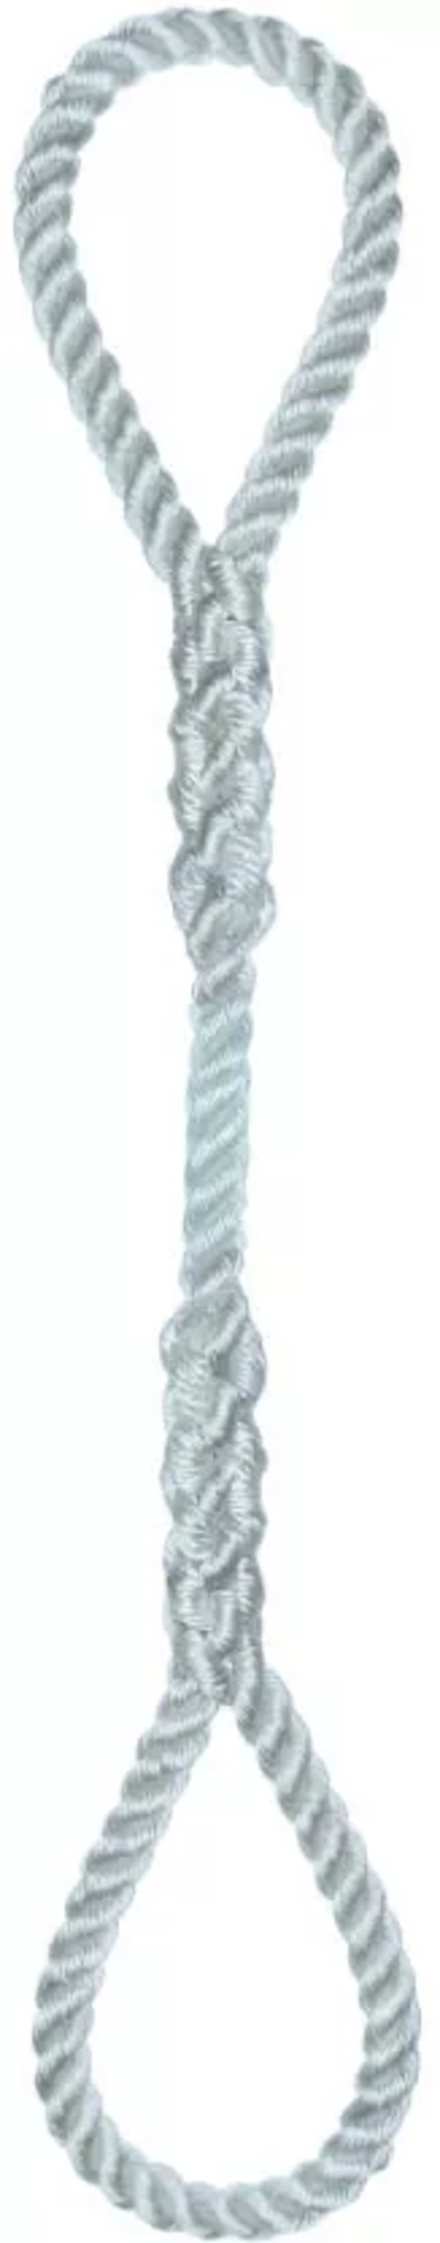 Élingue corde d.16 mm cmu 333 kg 2 grandes boucles long 1 m LEVAC - 4404I